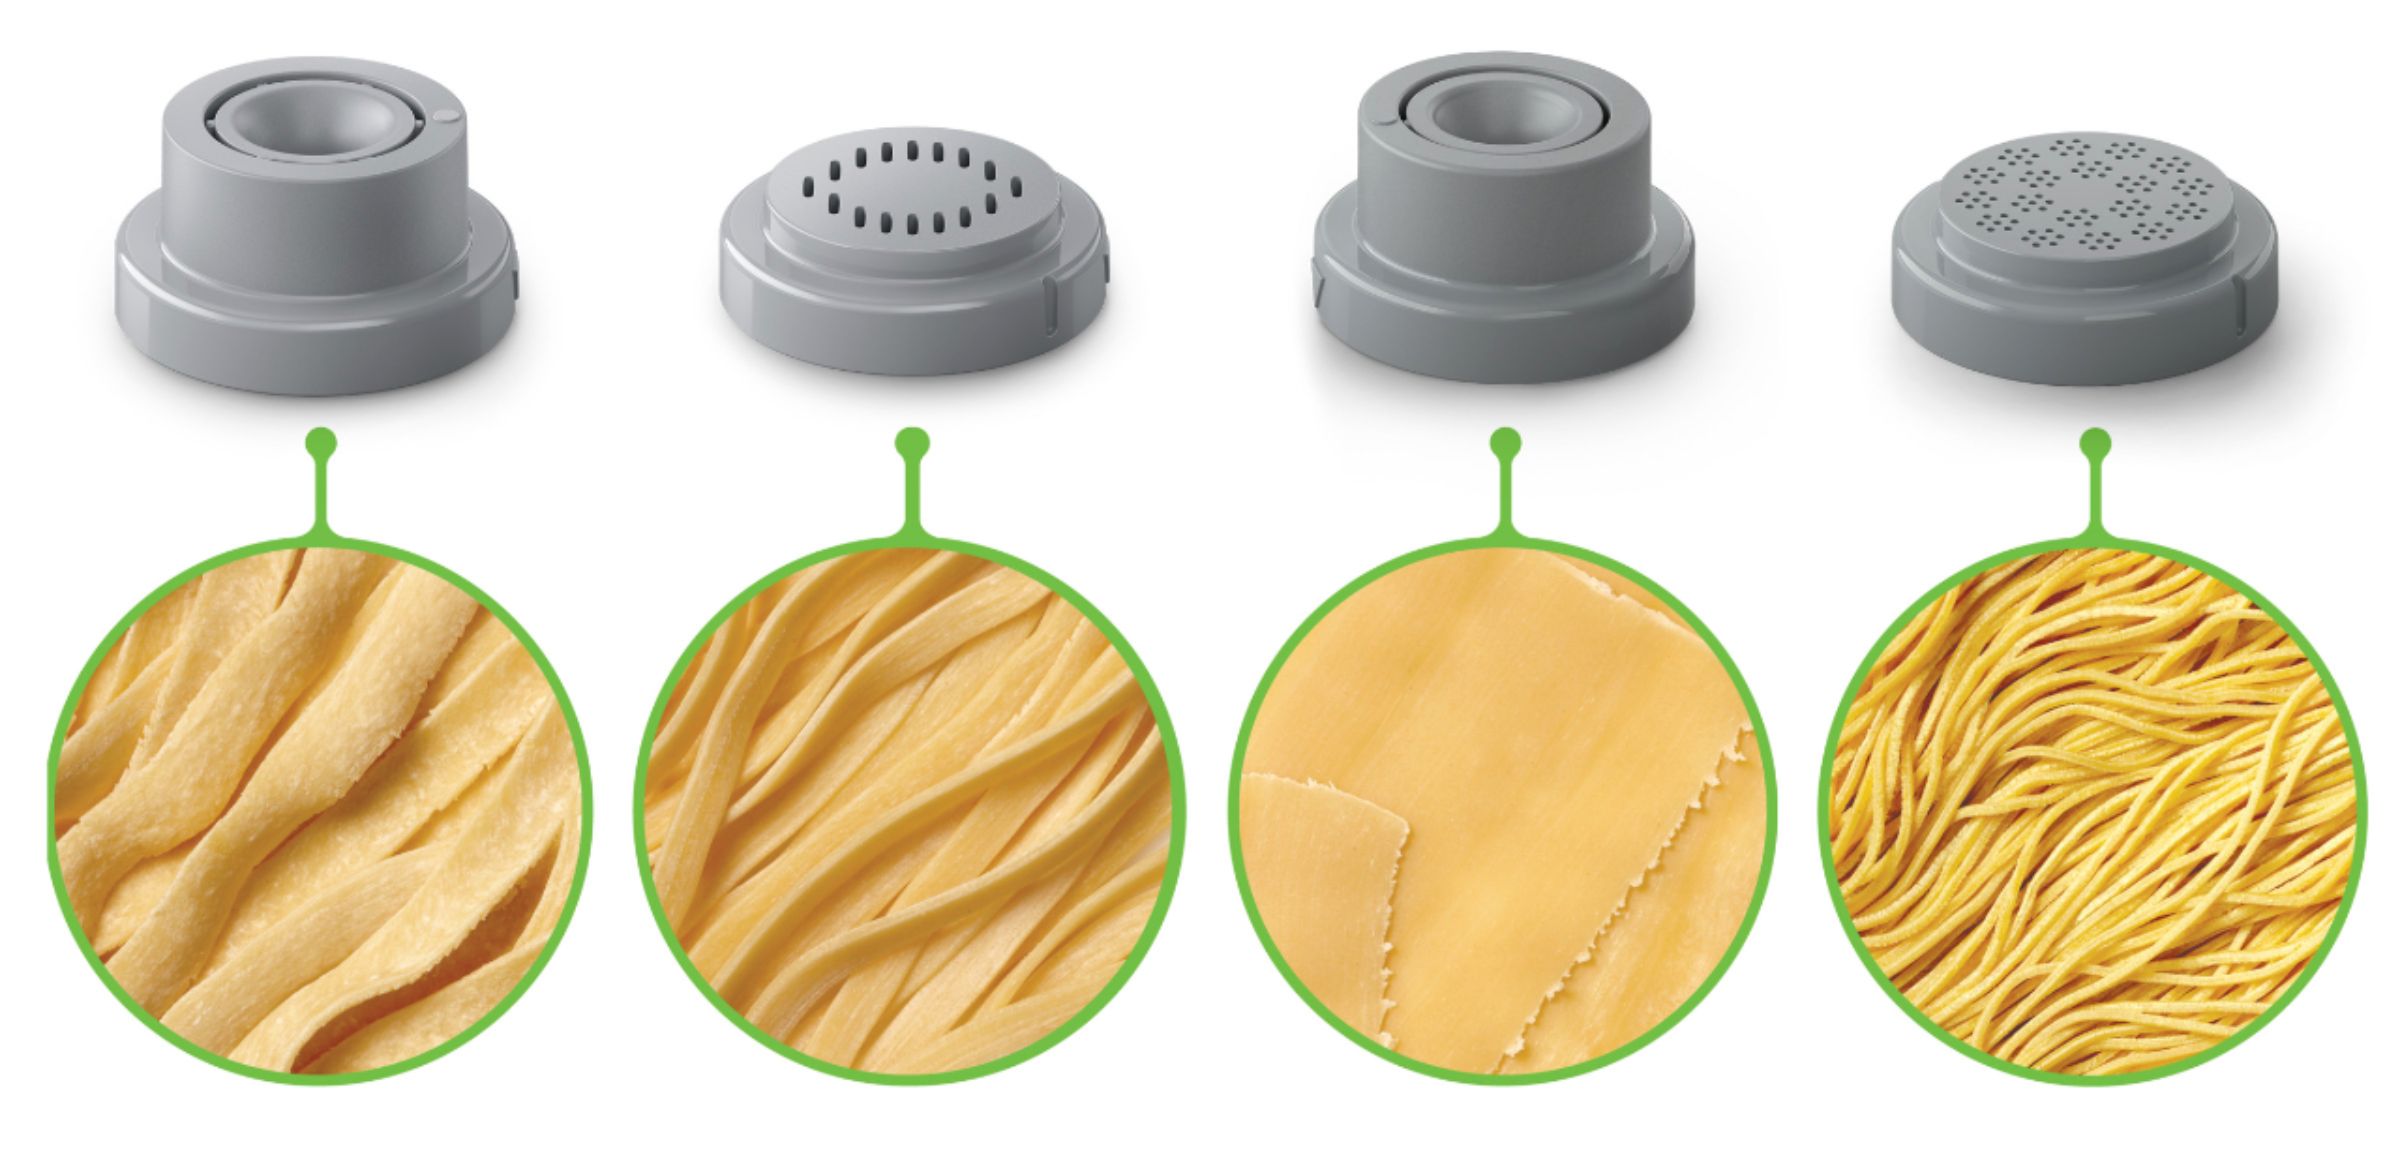 Best Buy: Philips Avance Pasta Maker 4-in-1 accessory shape kit